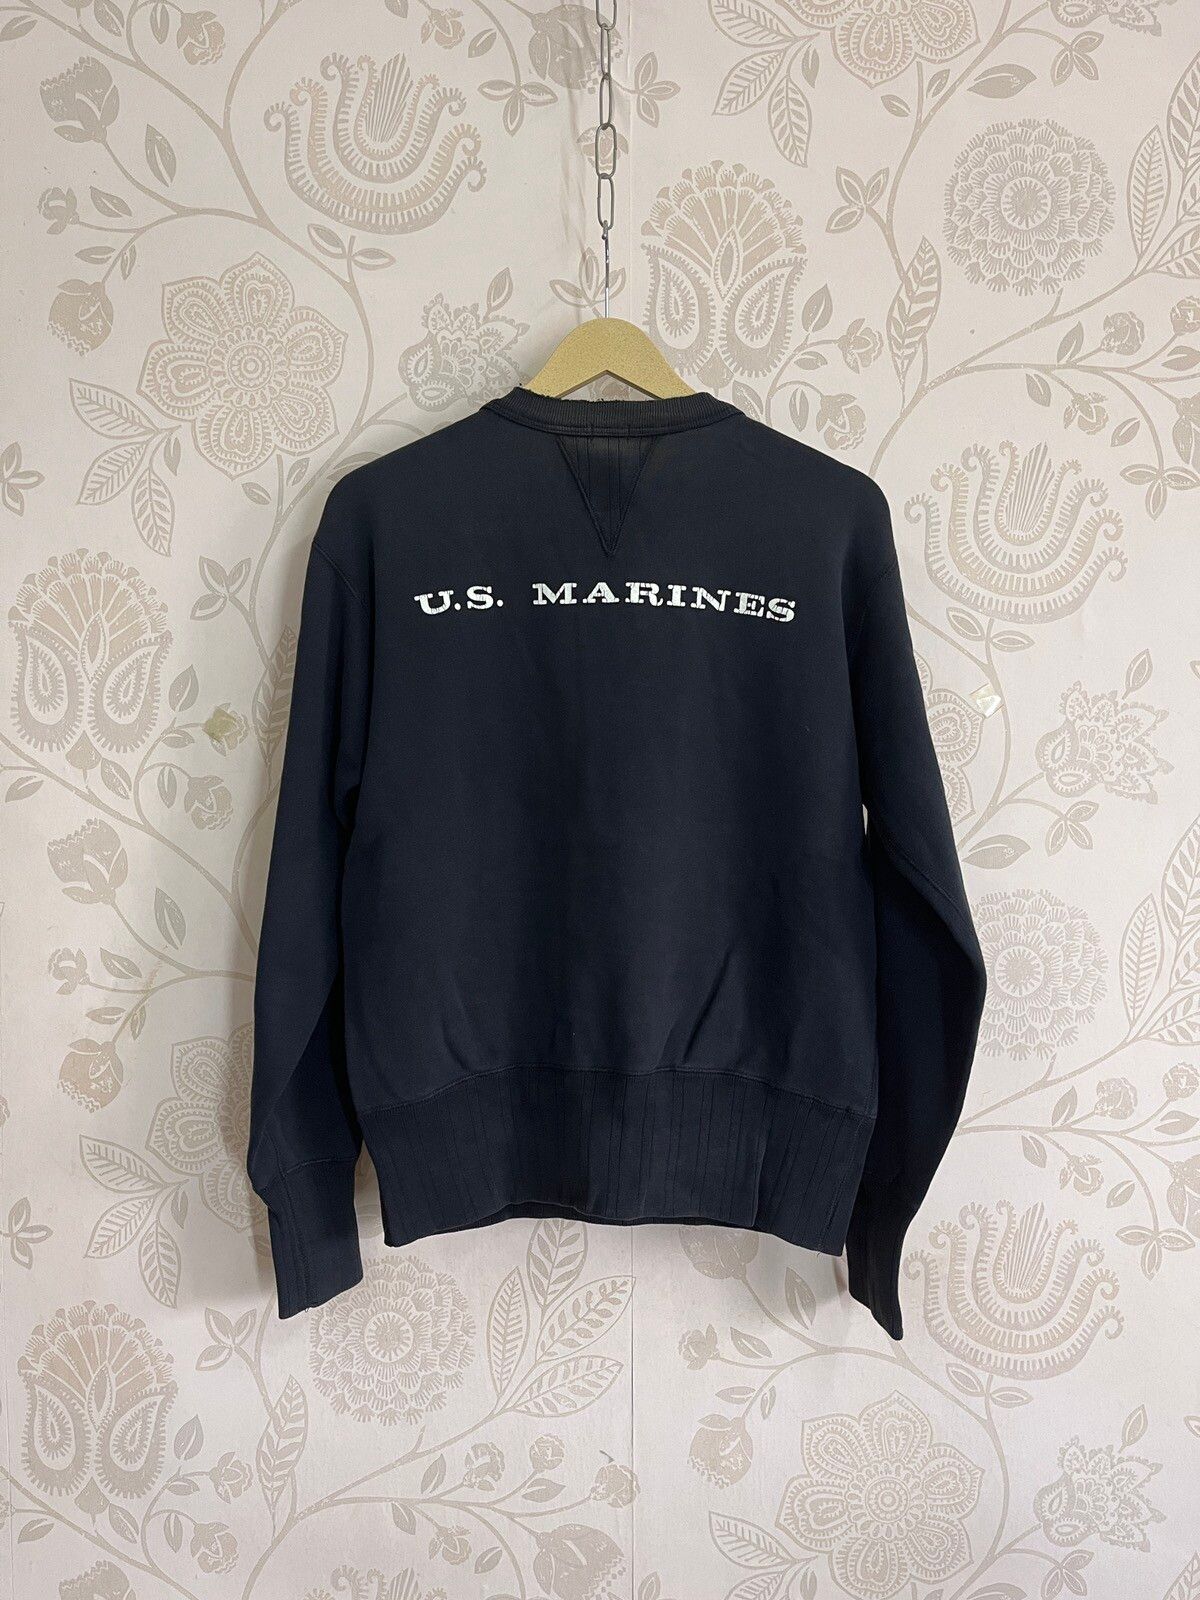 Vintage 1970s USMC Sweater US Marines Sportswear - 4